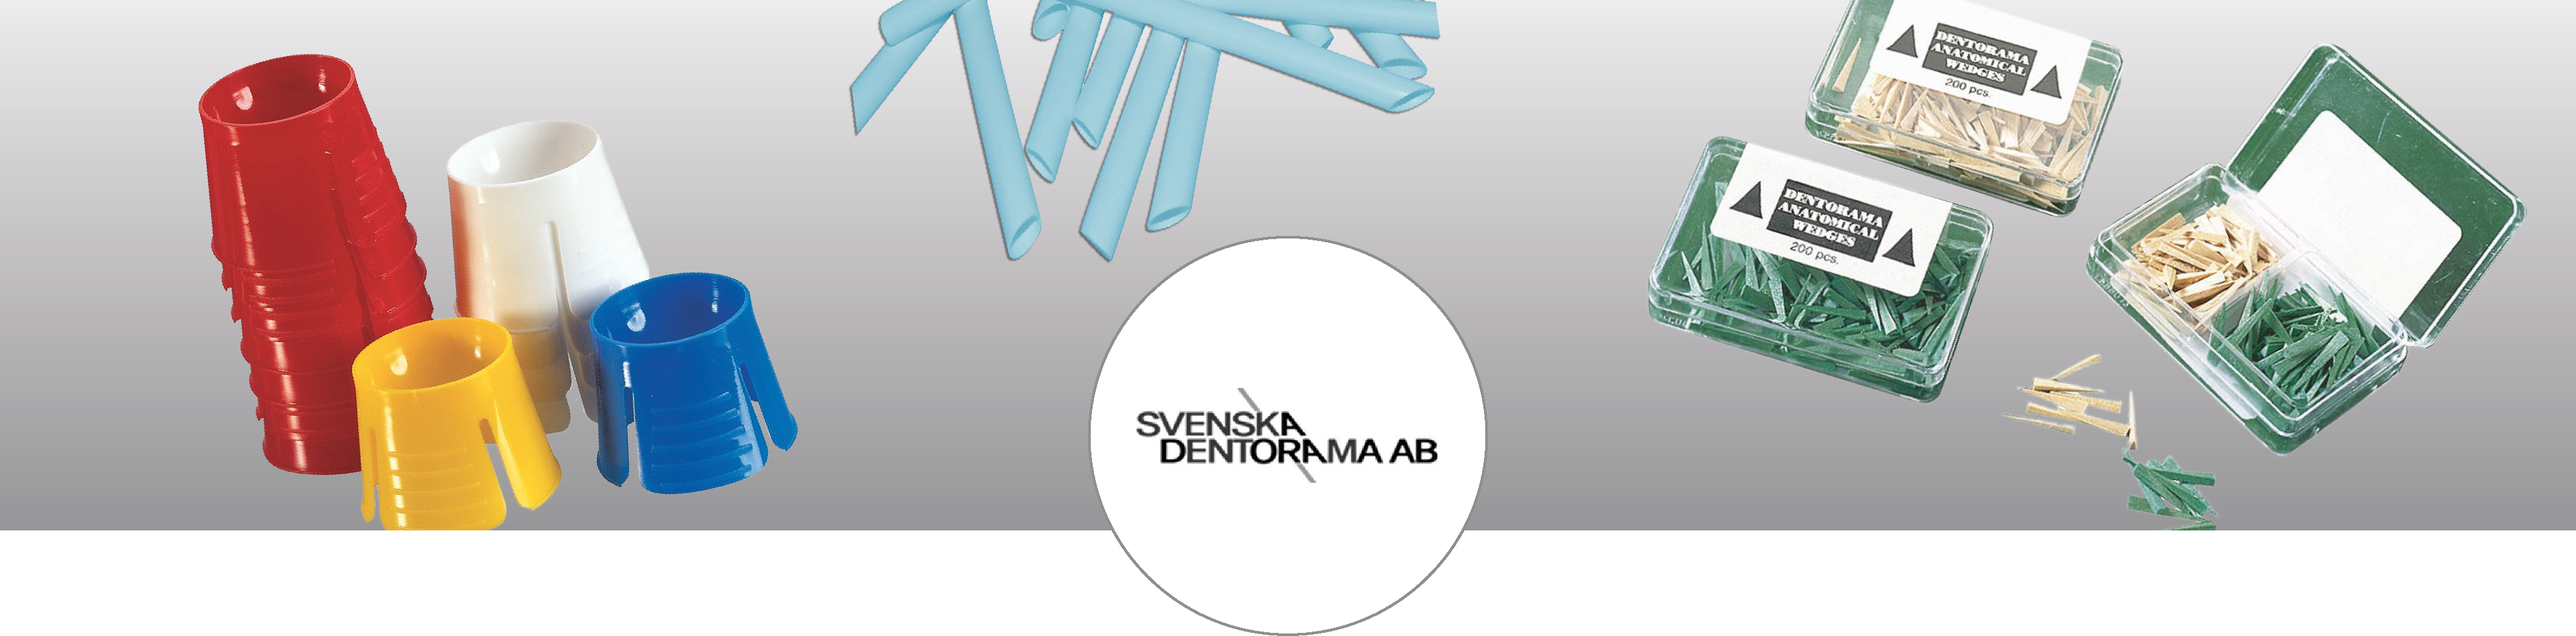 banner_svenska-dentorama